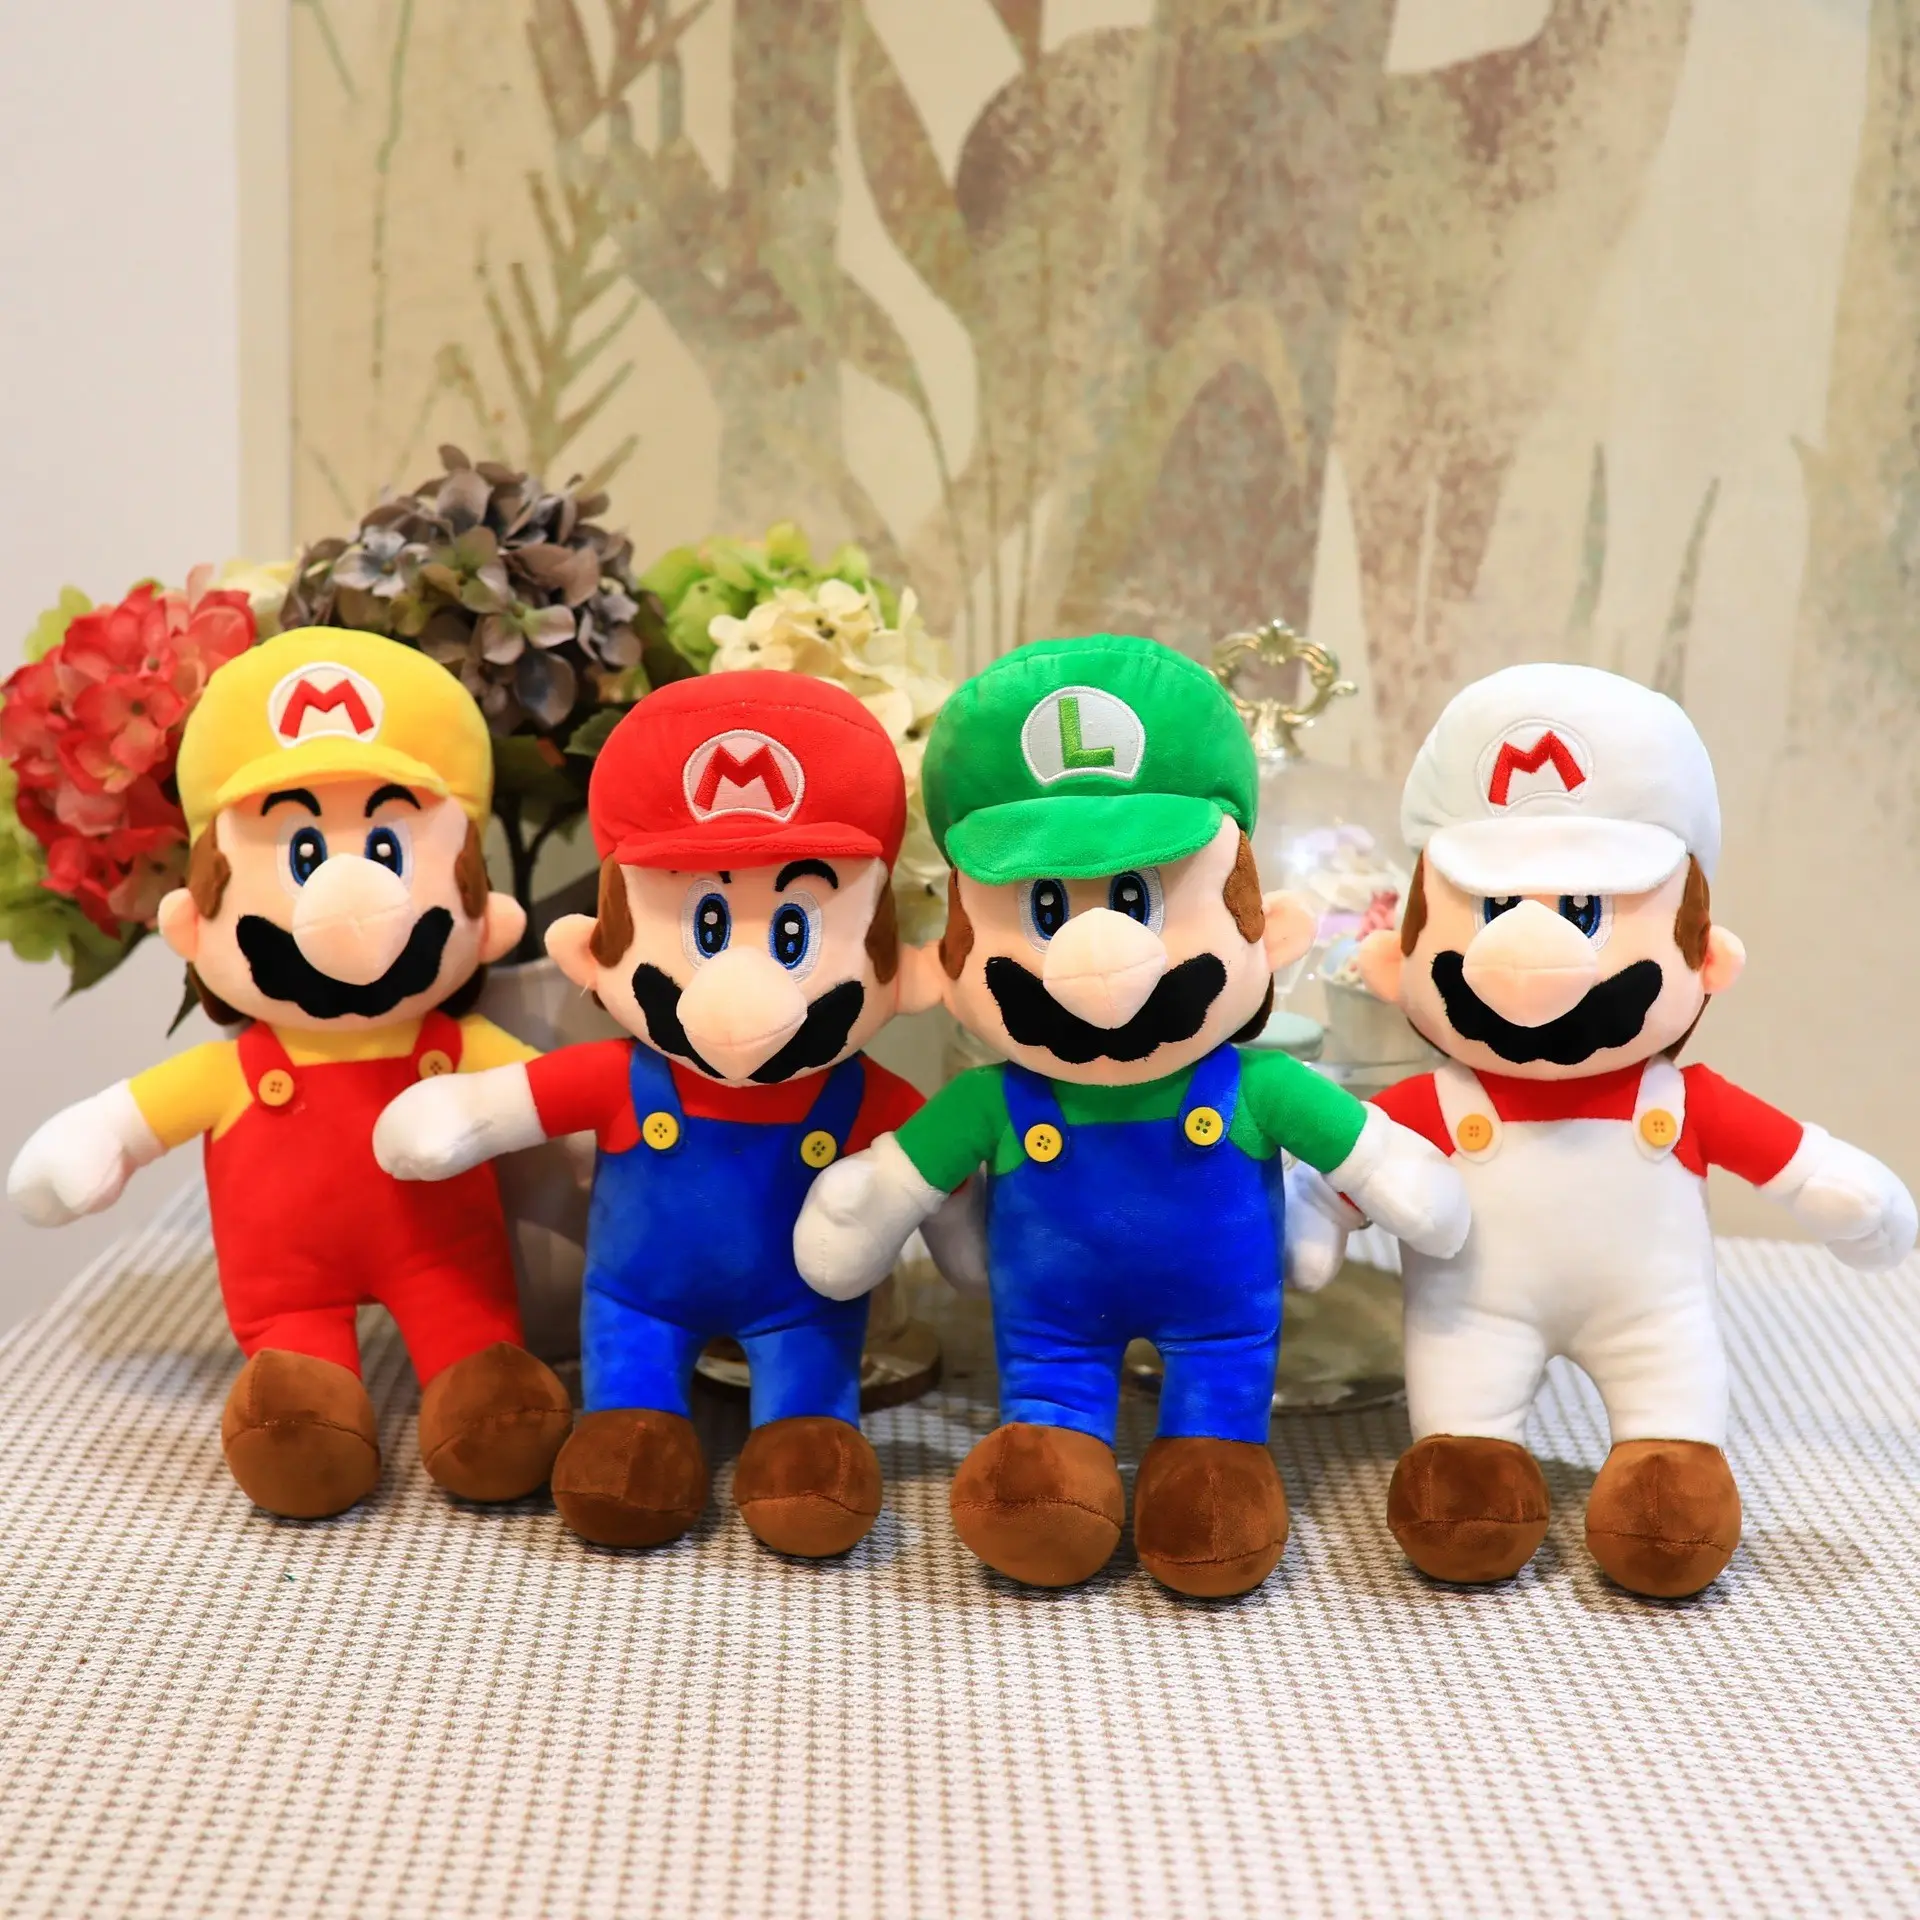 Высококачественные милые плюшевые игрушки в виде Марио, супер мягкие и удобные плюшевые игрушки в виде Марио, детский подарок, плюшевые игрушки в виде Марио